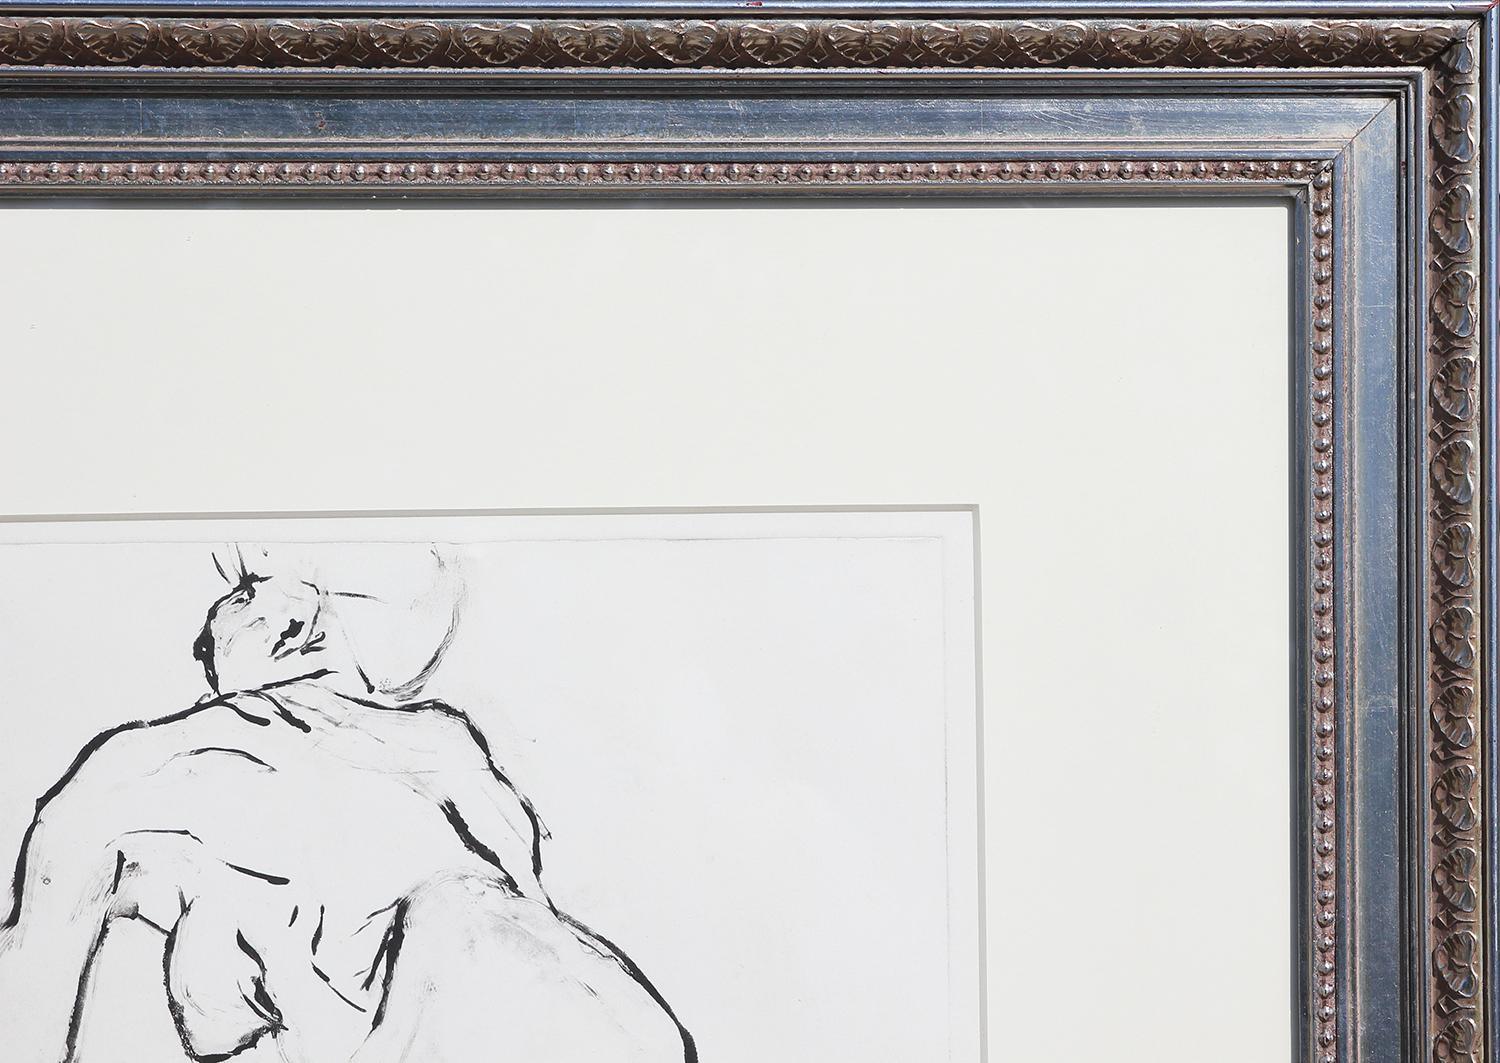 Schwarze und weiße abstrakte Umrisszeichnung, die eine nackte Frau darstellt. Gerahmt und mit einem Passepartout versehen in einem geschnitzten Holzrahmen in Silbermetallic. Signiert vom Künstler unten rechts. 

Abmessungen ohne Rahmen: H 20,25 x B